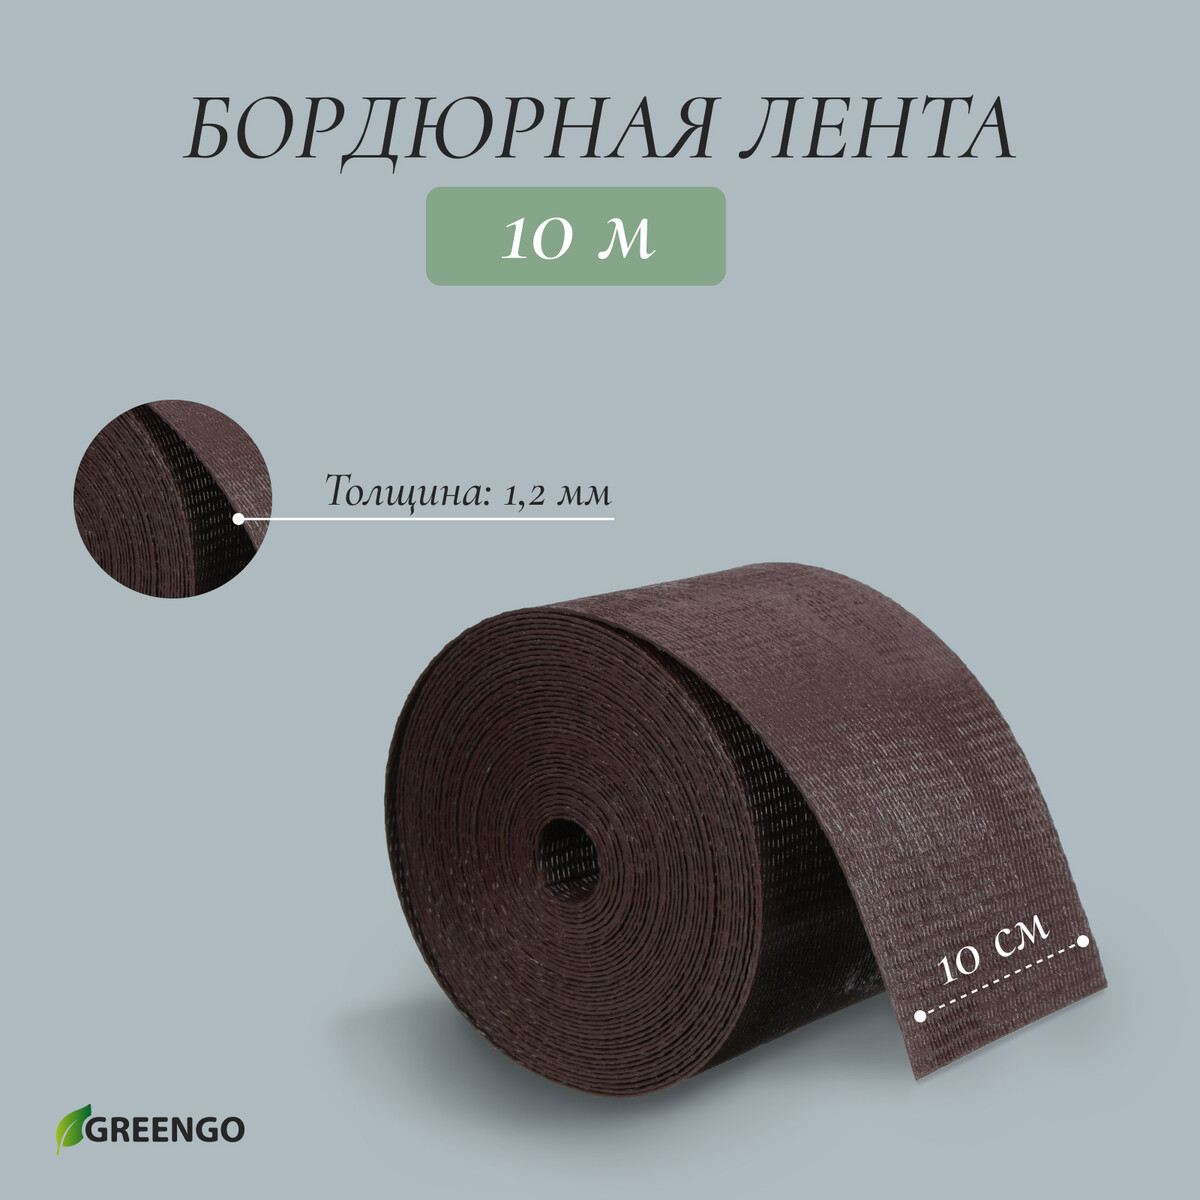 Лента бордюрная, 0.1 × 10 м, толщина 1.2 мм, пластиковая, коричневая, greengo лента бордюрная 0 15 × 9 м толщина 1 2 мм пластиковая фигурная зеленая